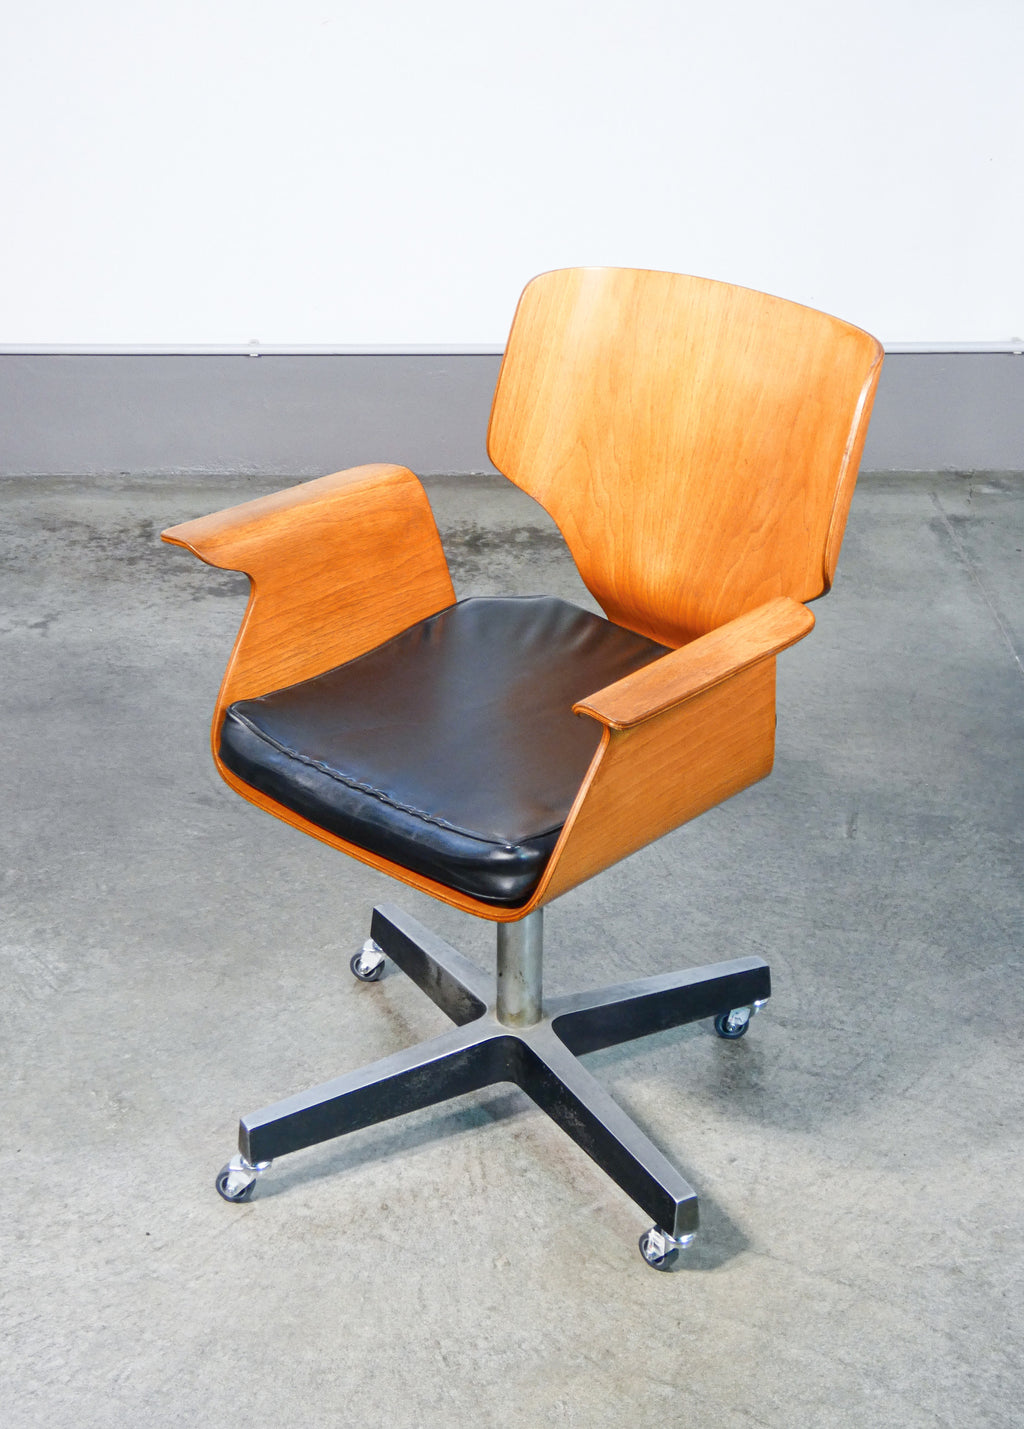 sedia girevole design stile carlo ratti legno curvato 1950s ufficio braccioli